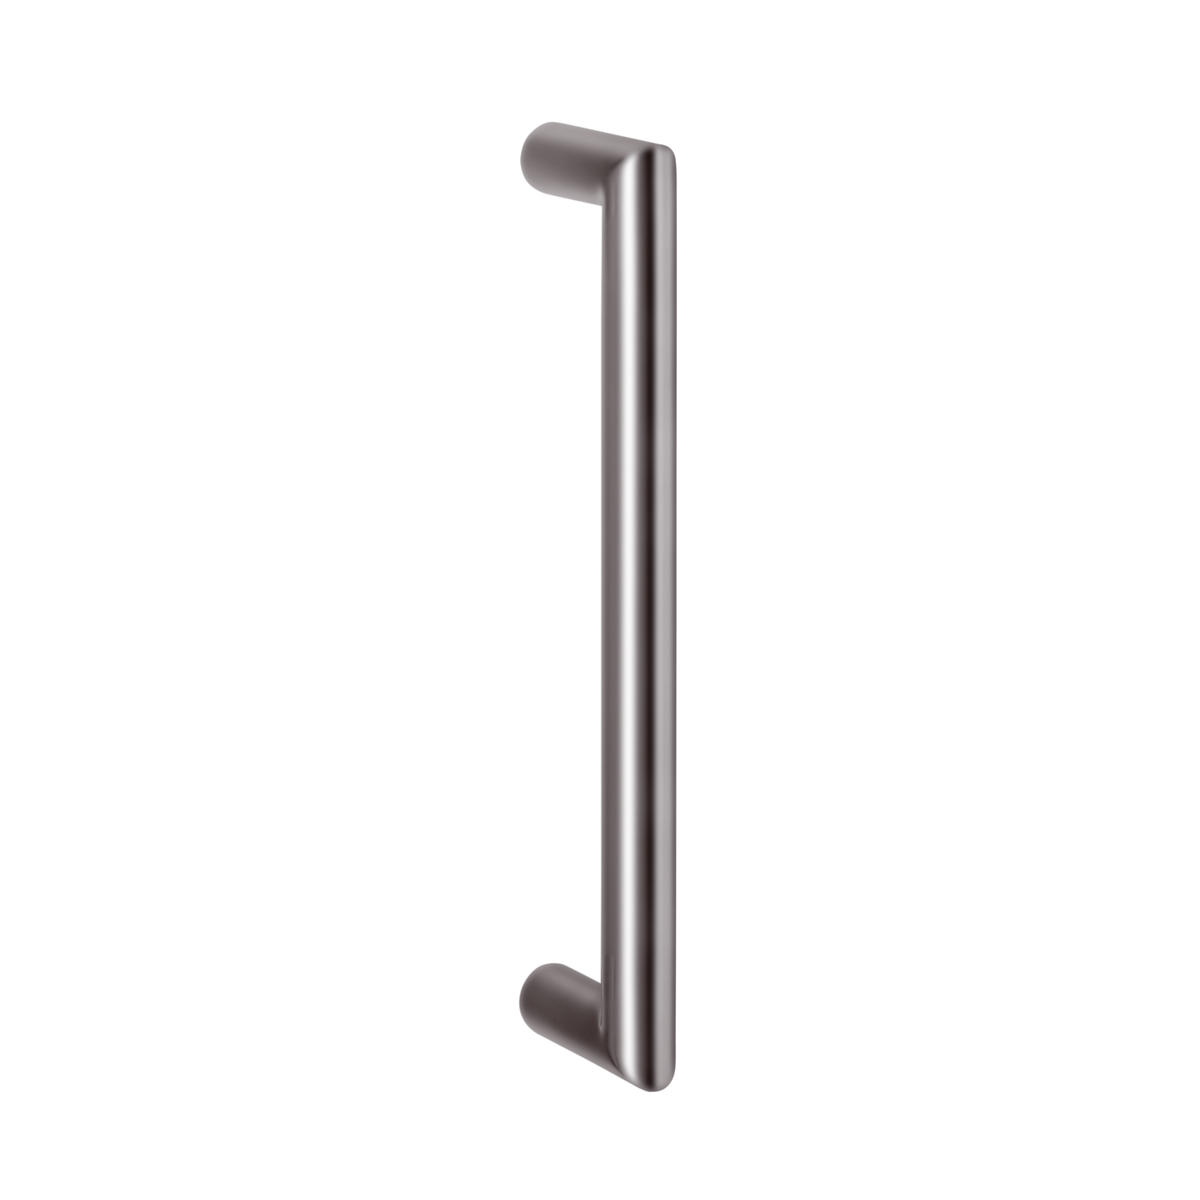 Puerta de entrada de alta calidad, manija de puerta en forma de T de acero inoxidable